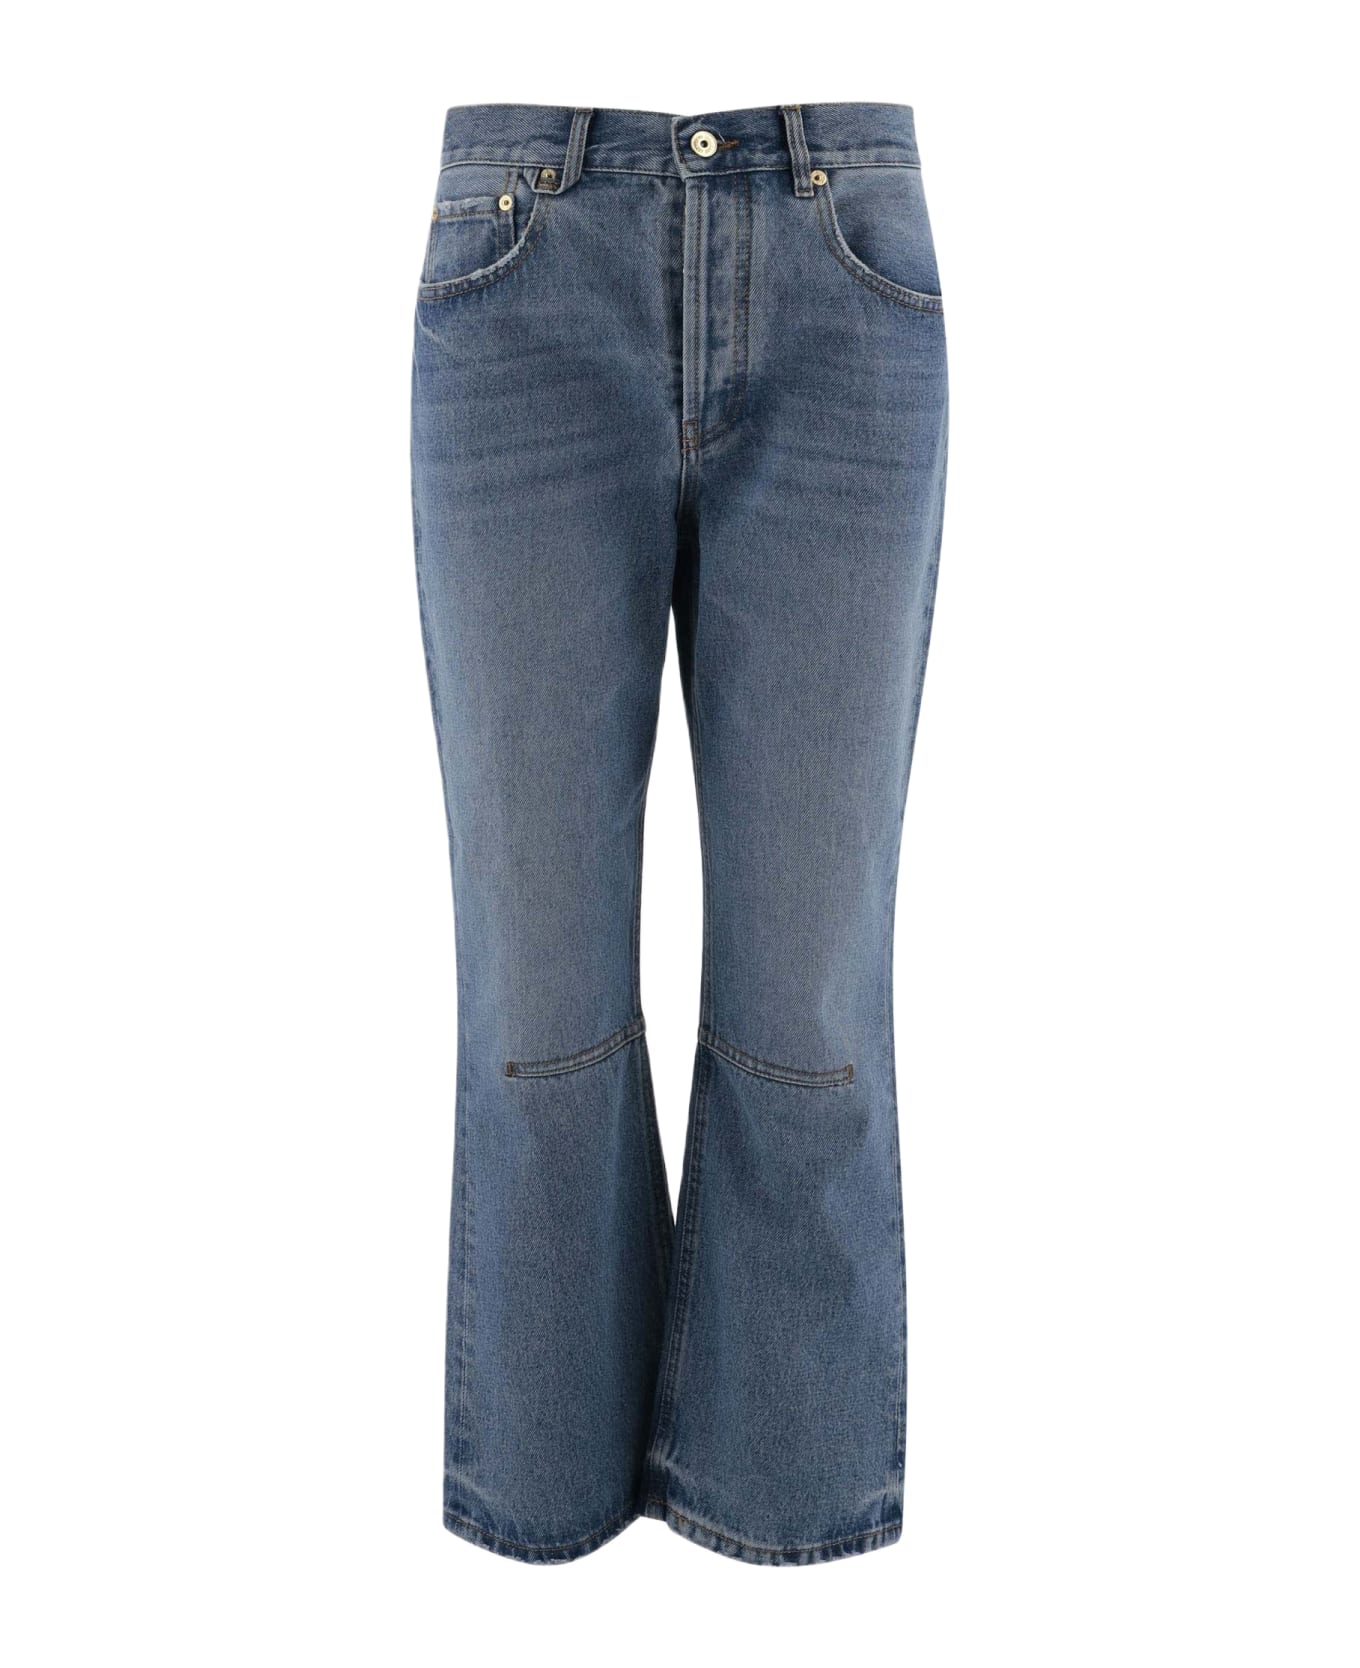 Jacquemus Cotton Denim Jeans - 33C BLUE/TABAC